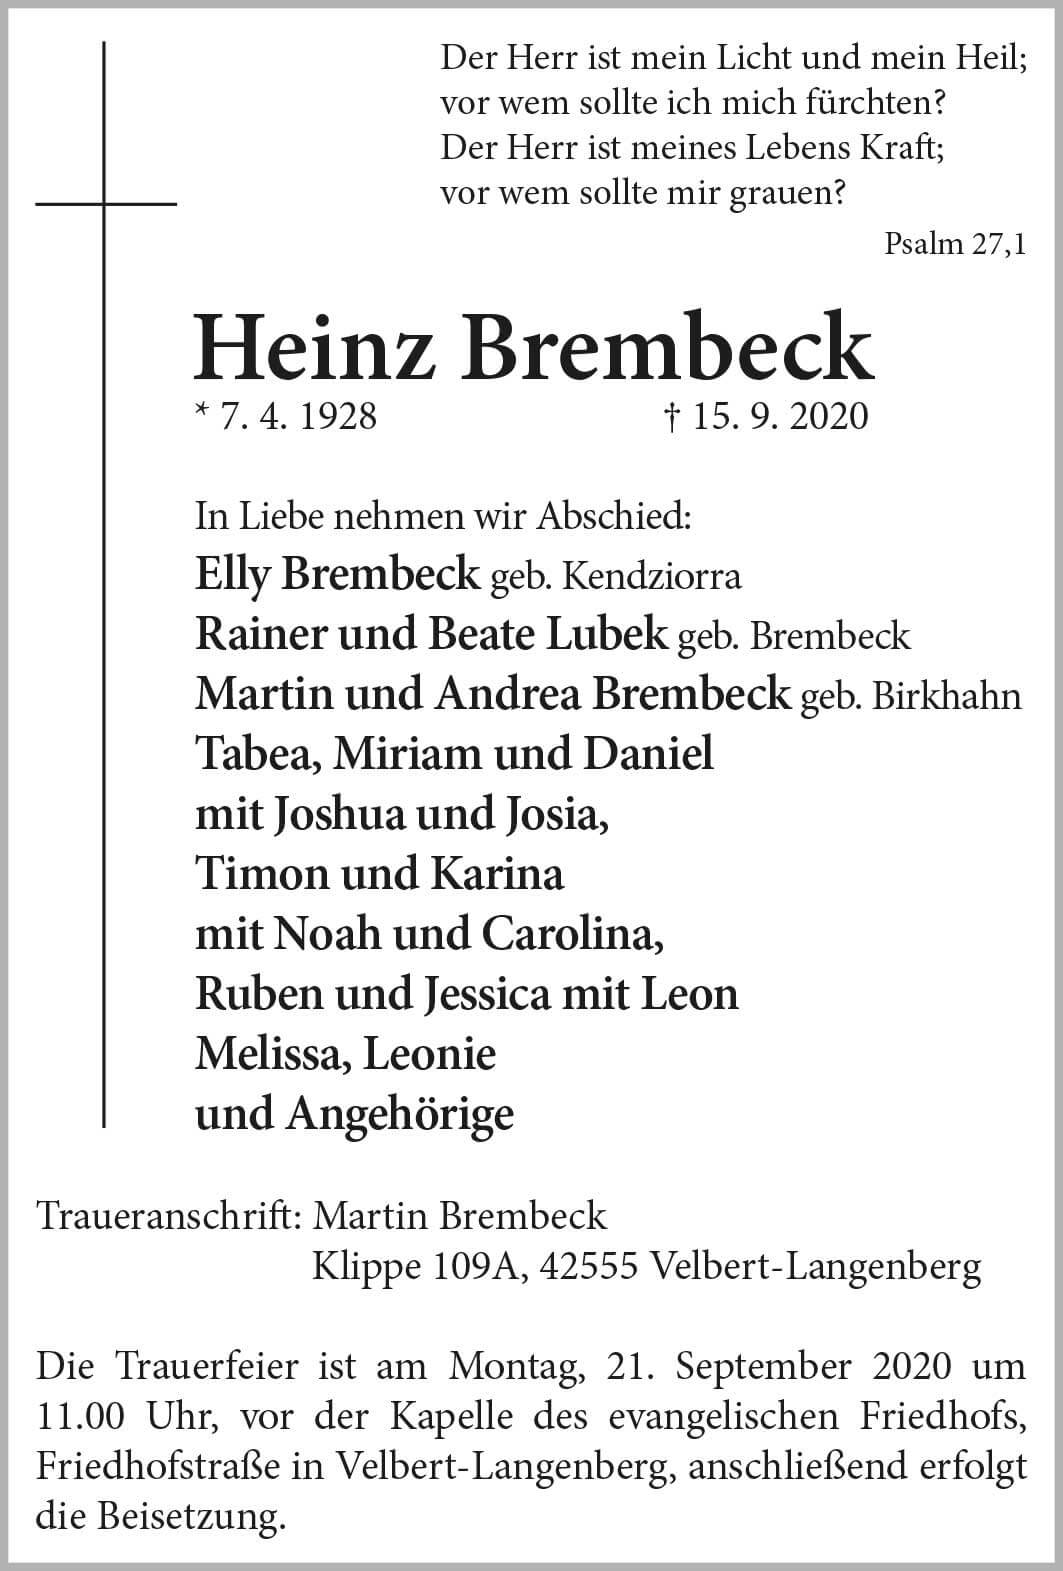 Heinz Brembeck † 15. 9. 2020